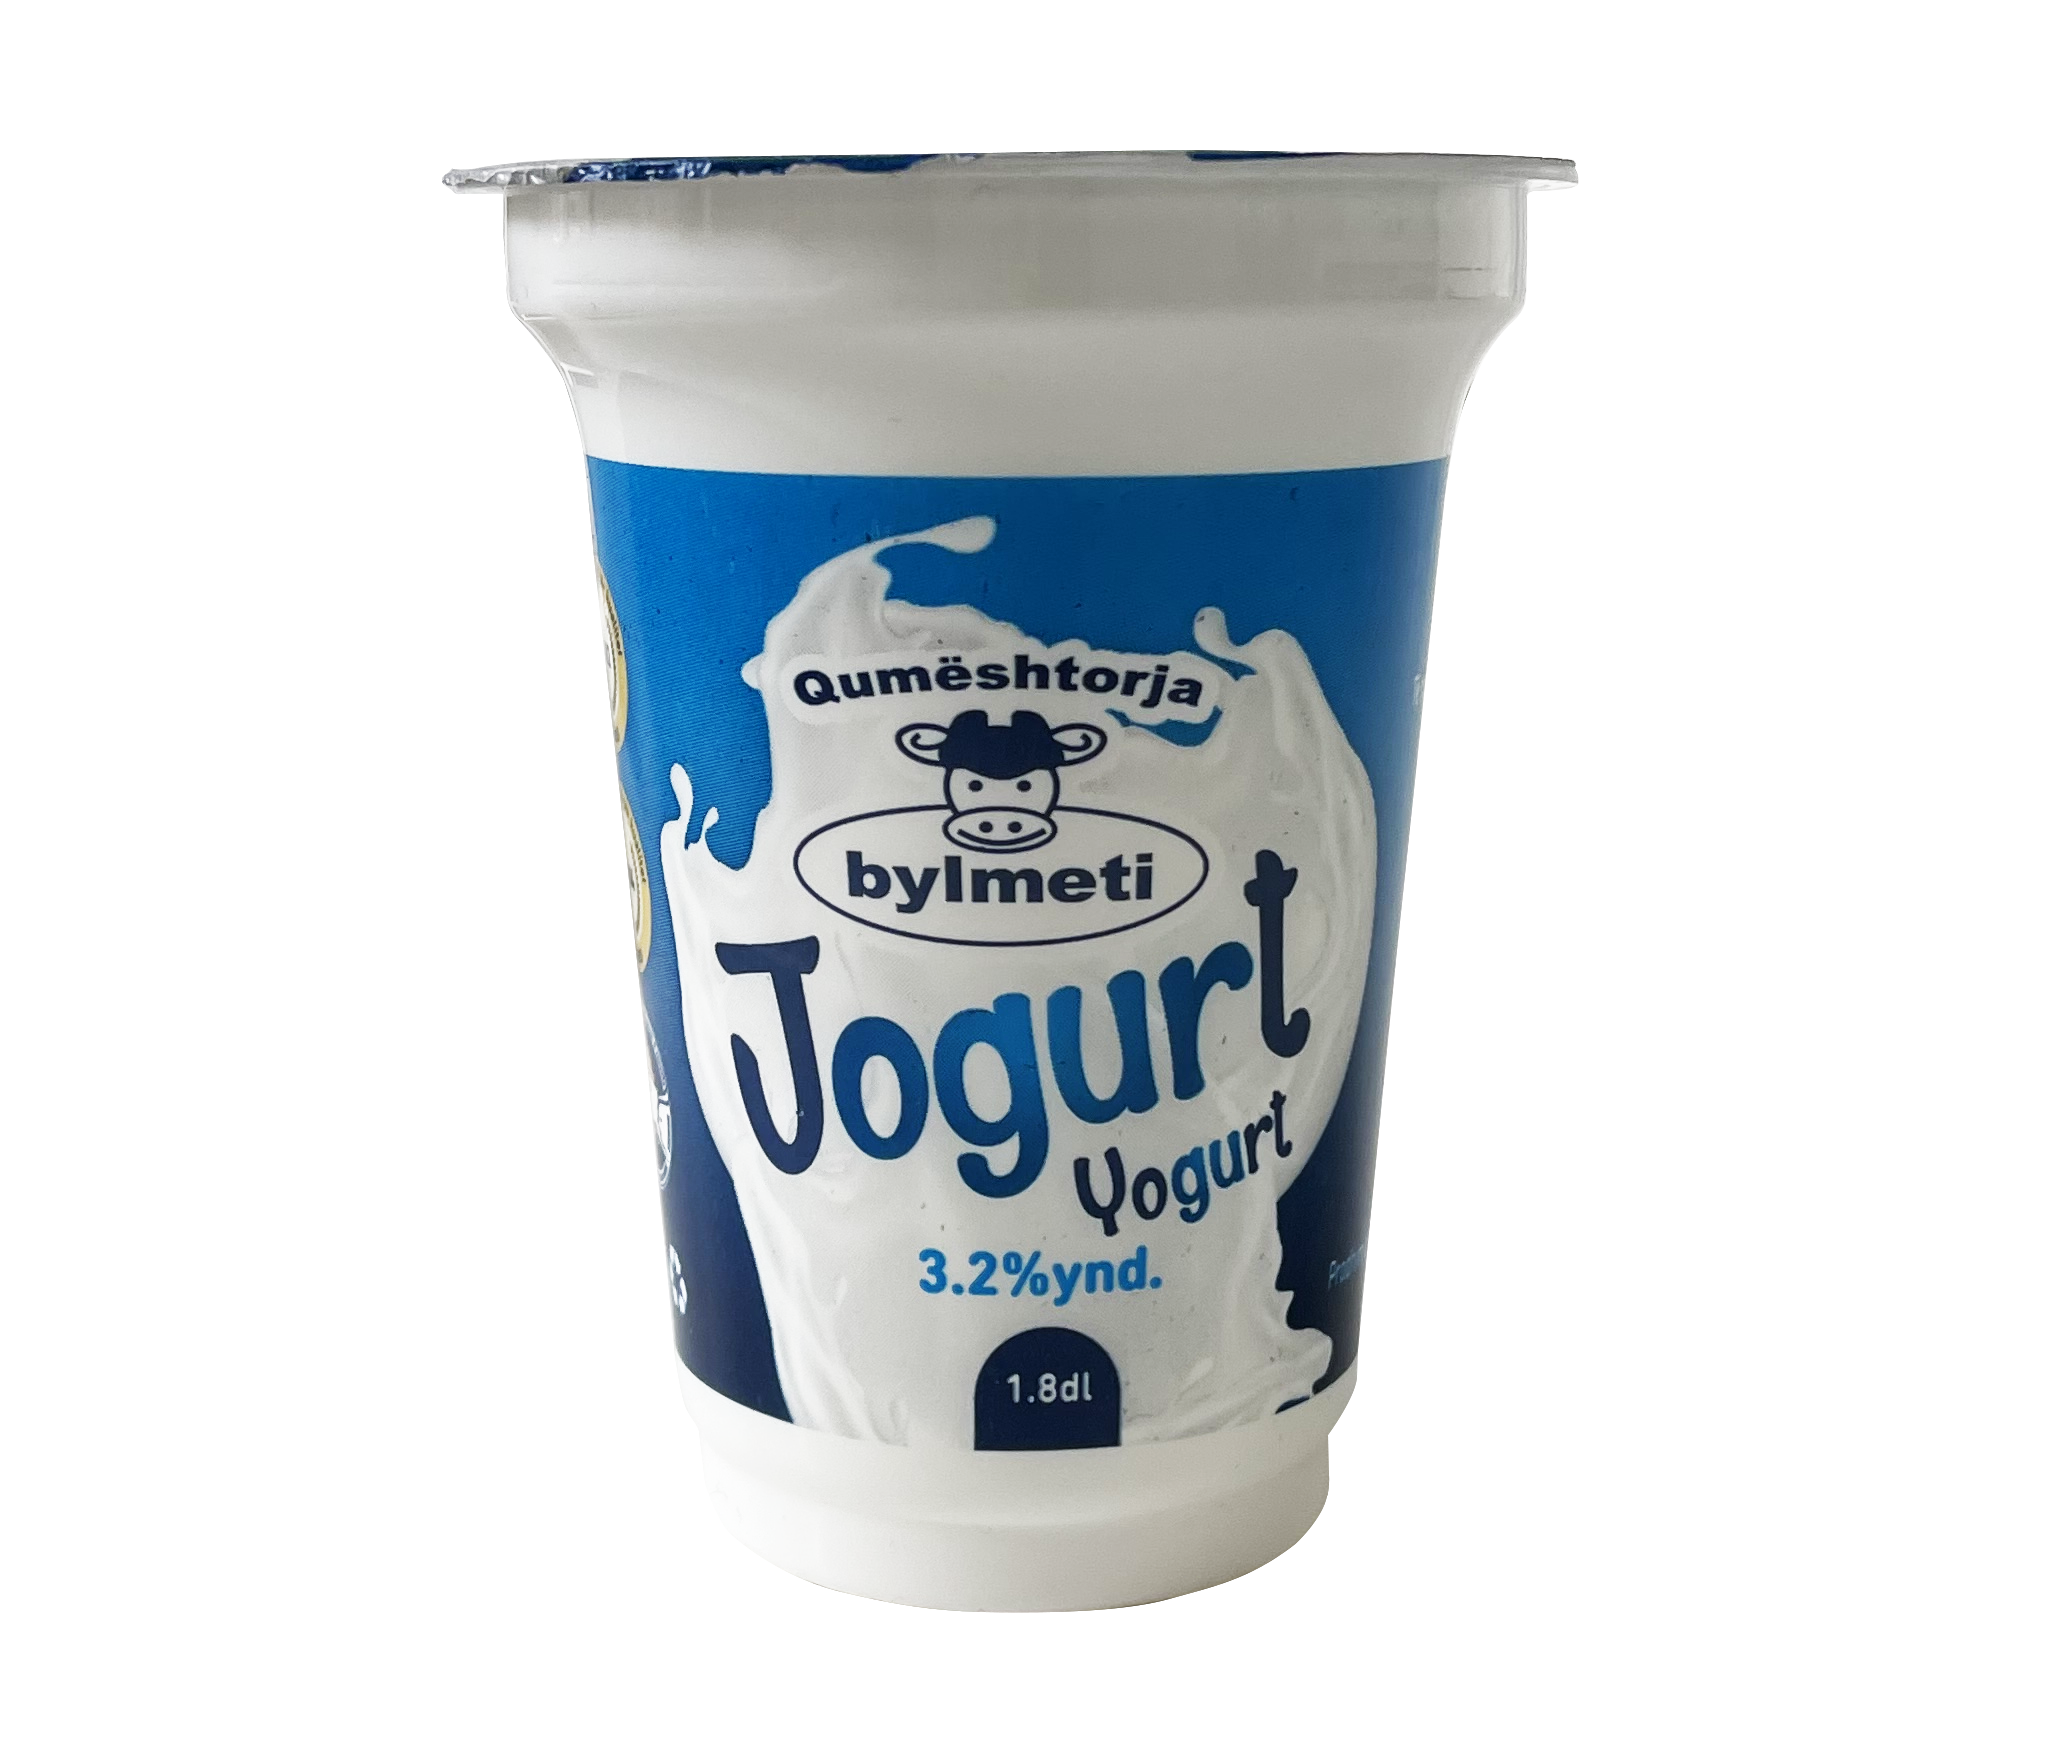 Jogurt 1.8 dl.